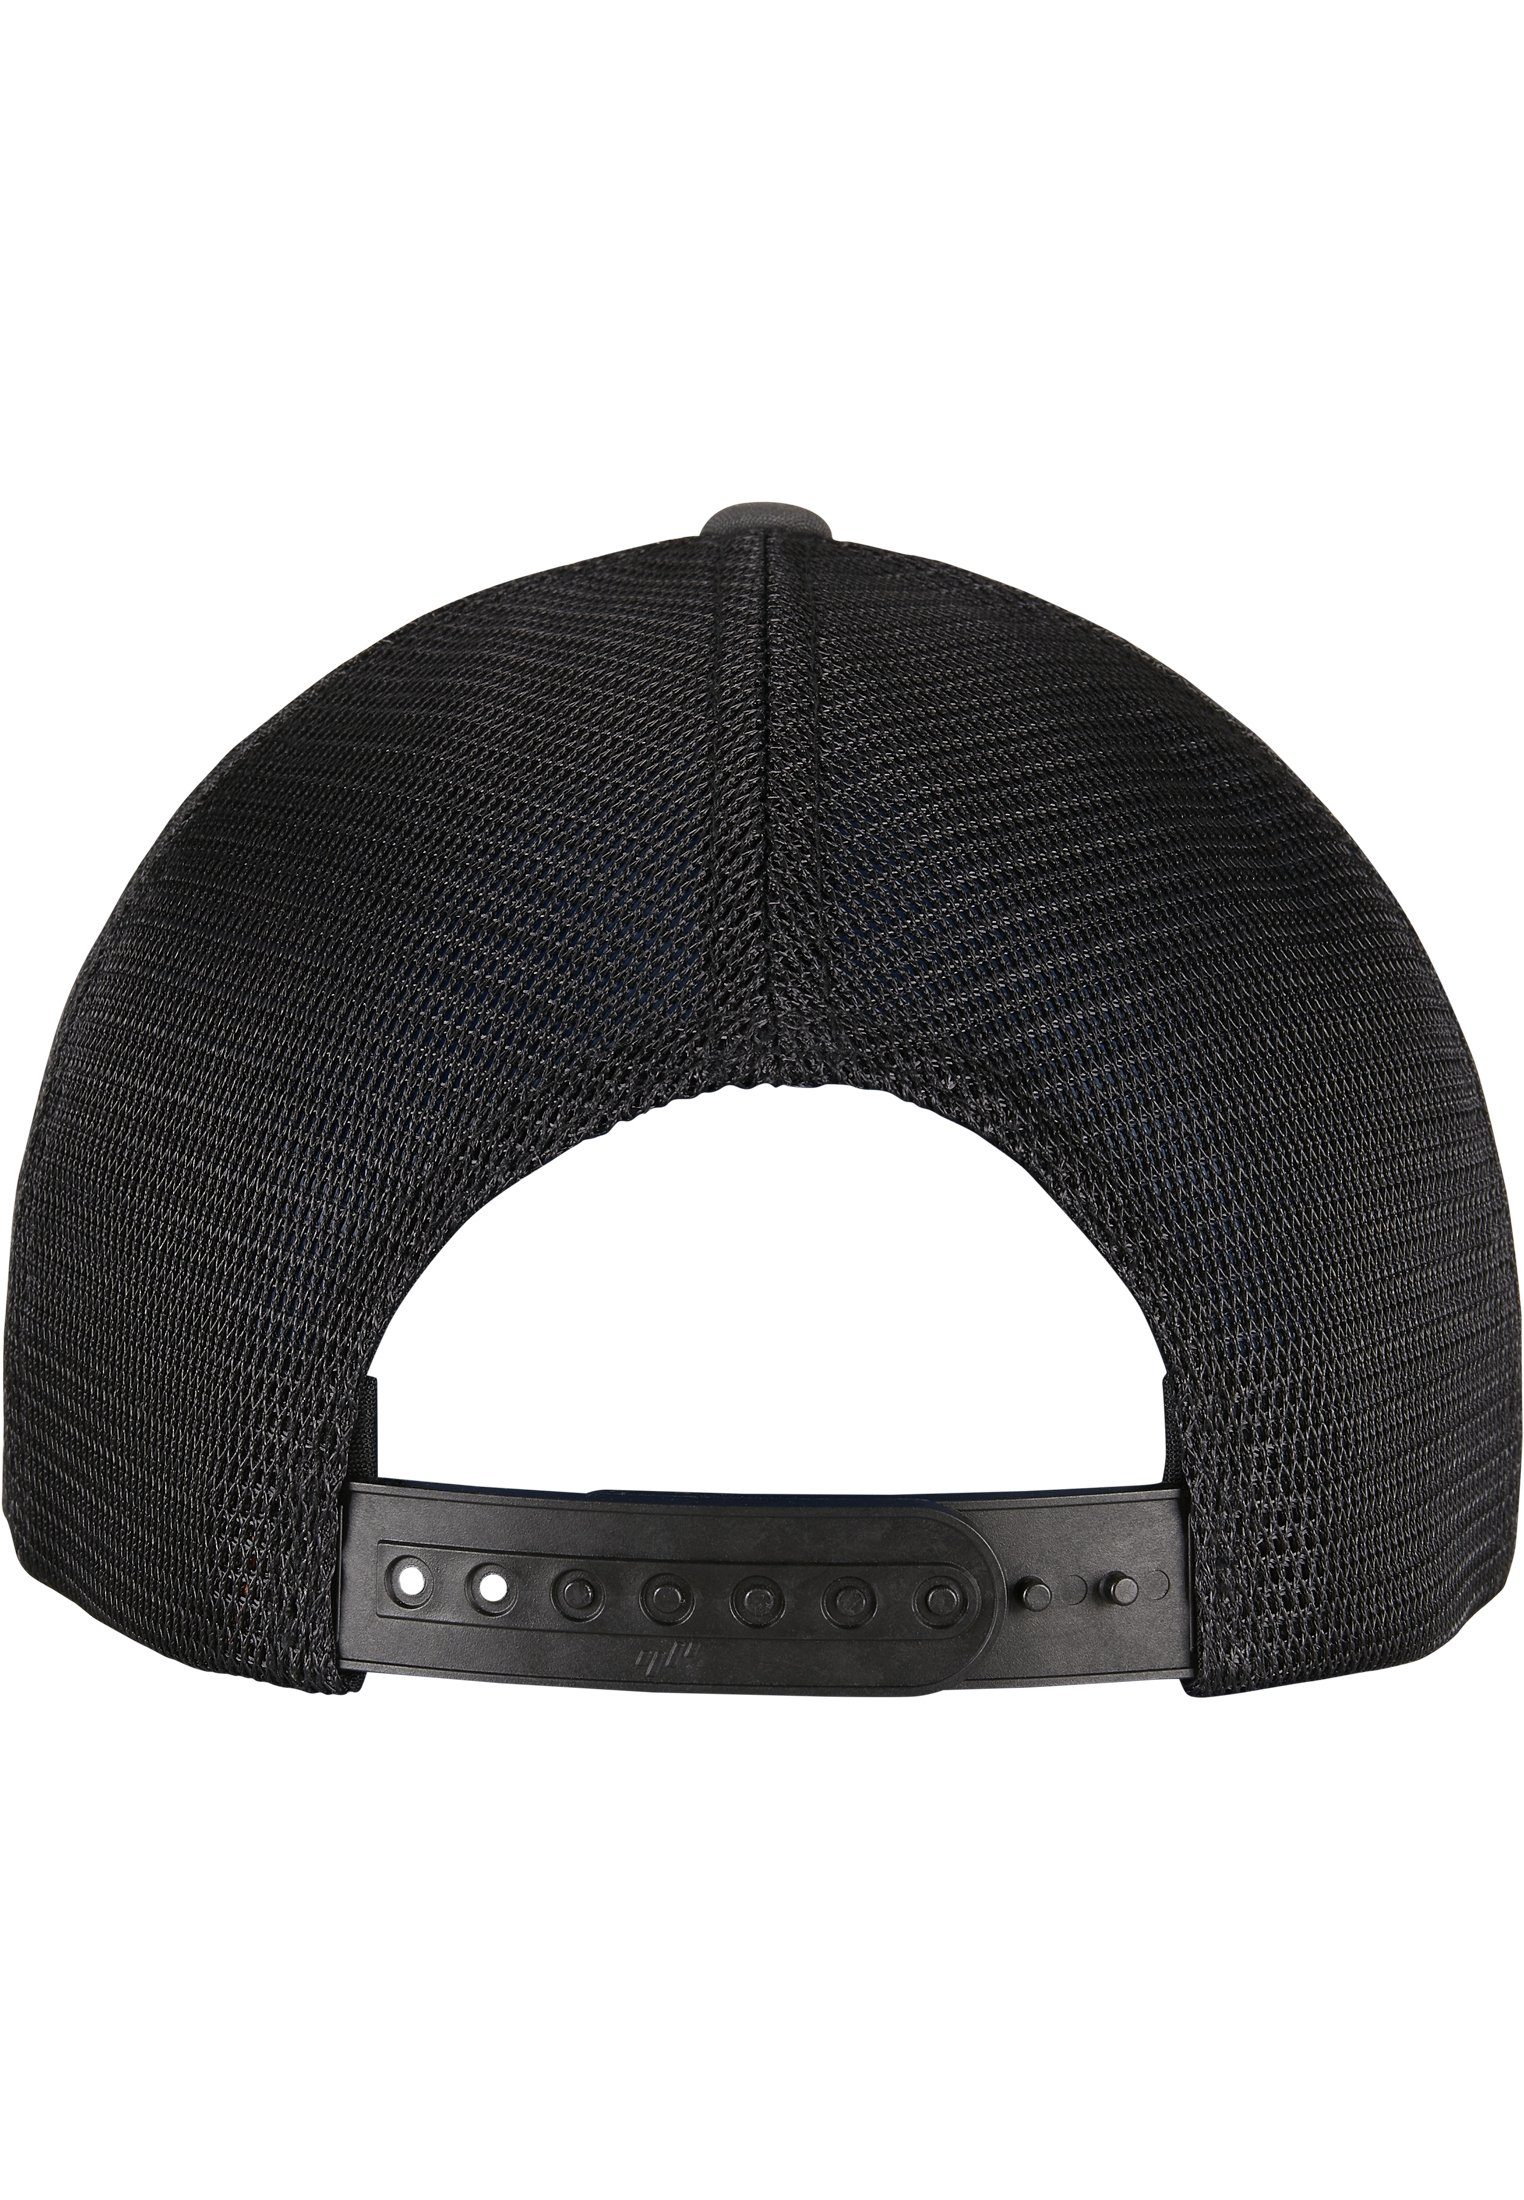 Flexfit Flex Cap Accessoires 360° Cap charcoal/black 2-Tone Omnimesh